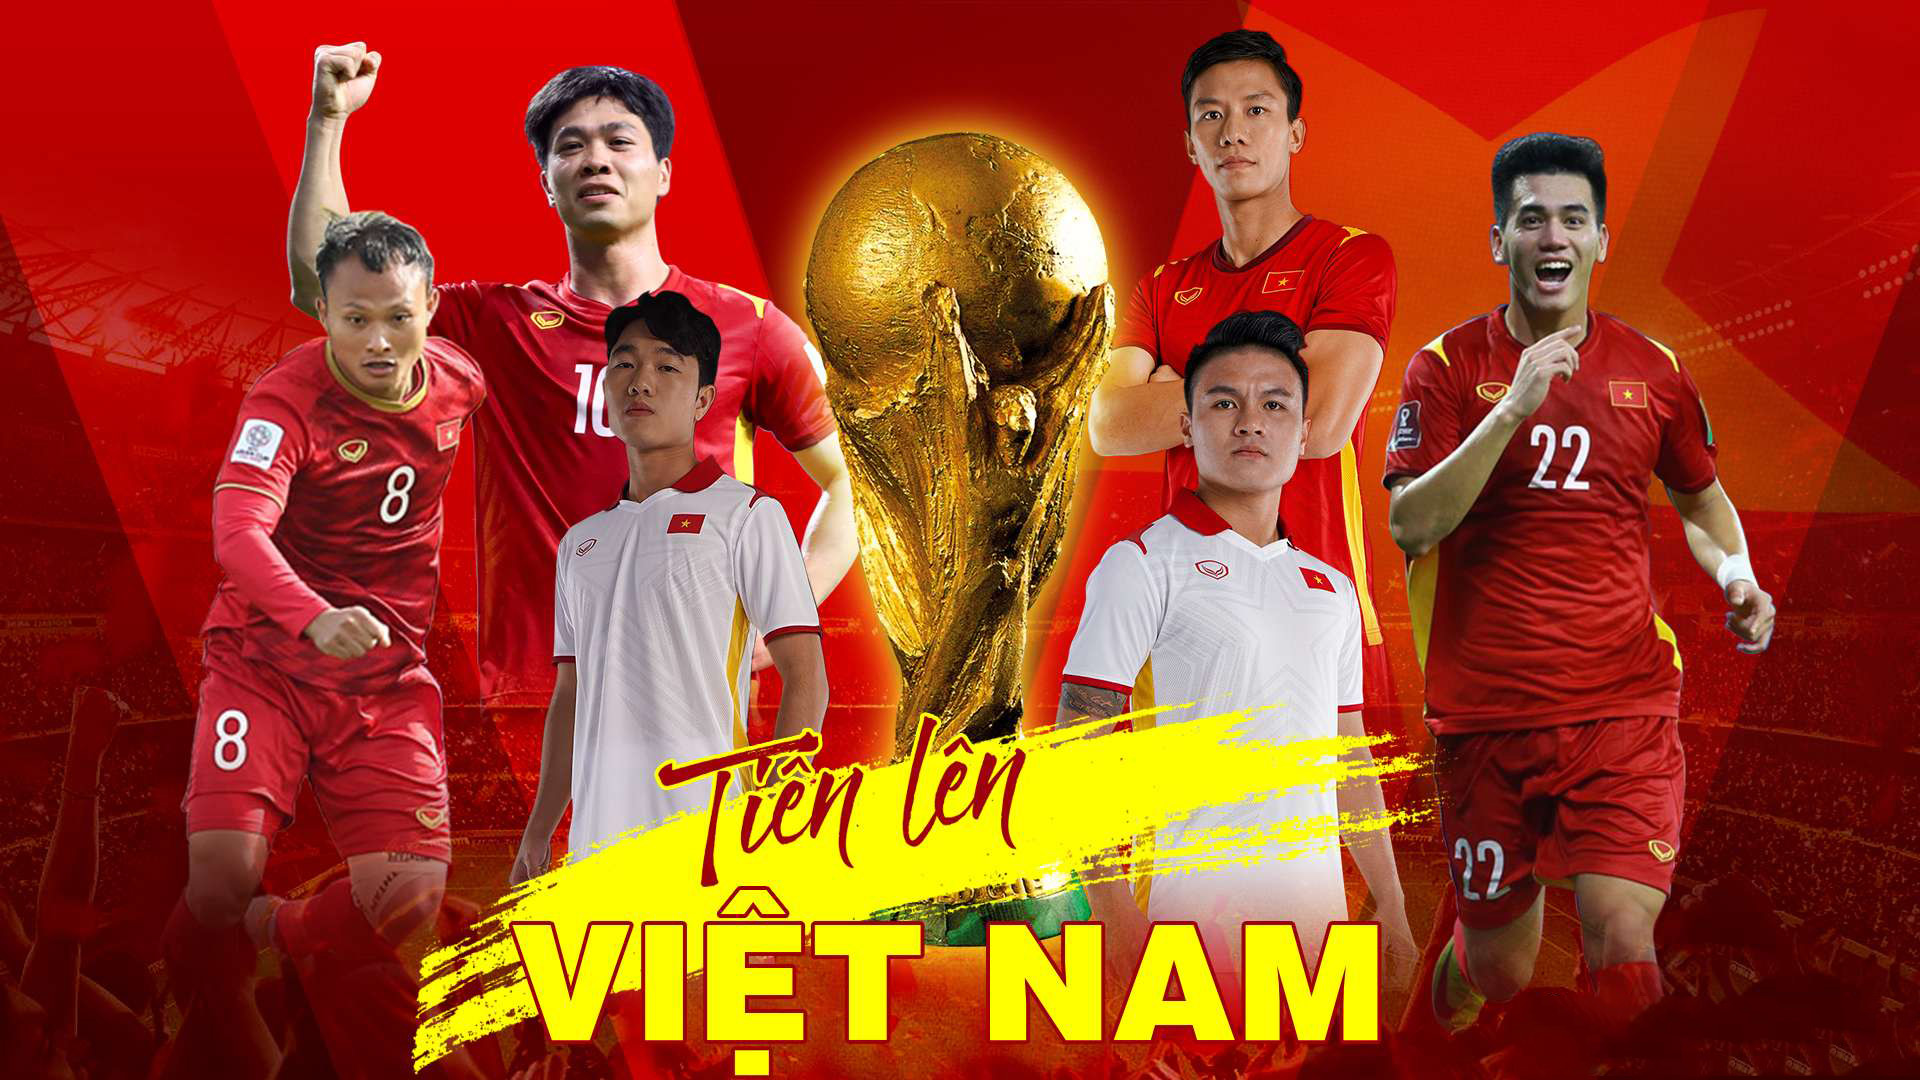 World Cup 2022 sẽ là sự kiện thể thao quan trọng nhất trong năm tới với sự tham gia của các đội tuyển bóng đá hàng đầu thế giới. Bạn có muốn cập nhật thông tin mới nhất về World Cup 2022 và đội tuyển Việt Nam? Hãy truy cập những hình ảnh liên quan đến sự kiện này ngay hôm nay!